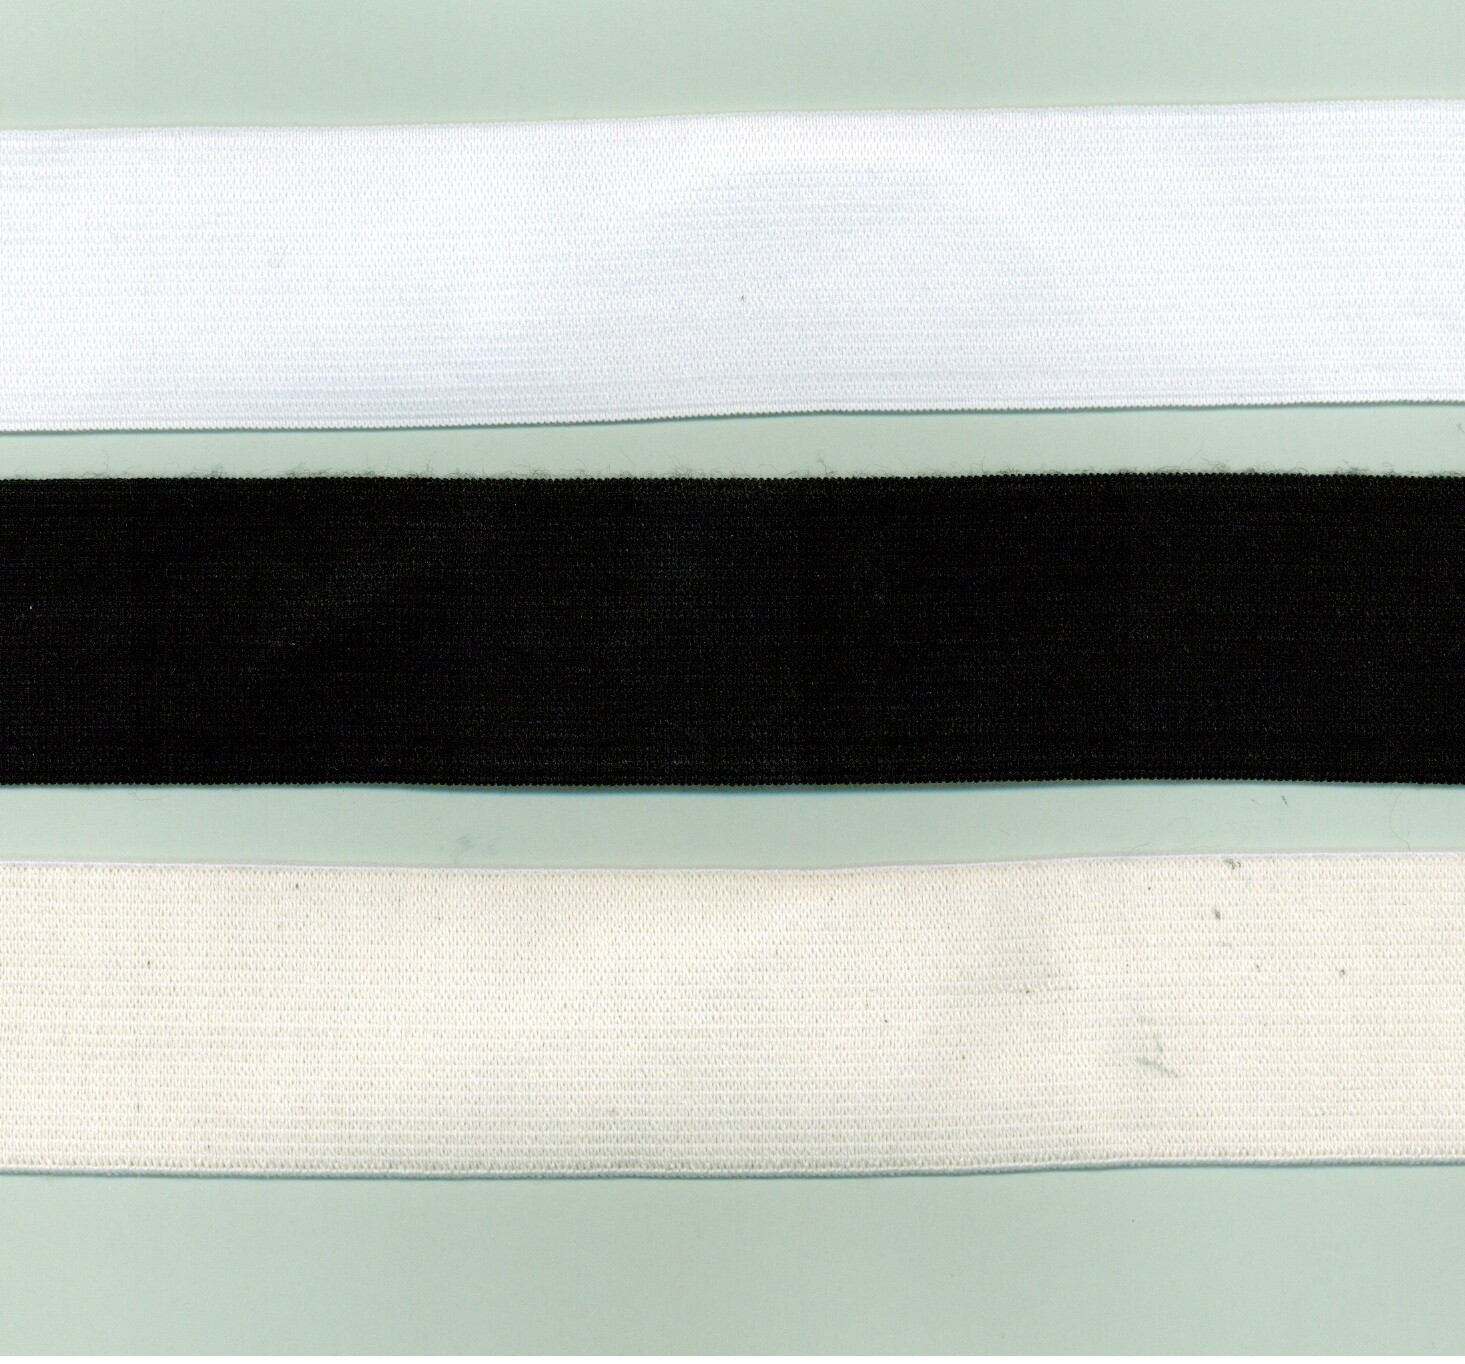 01 - Nastri elastici crochet bianchi e neri